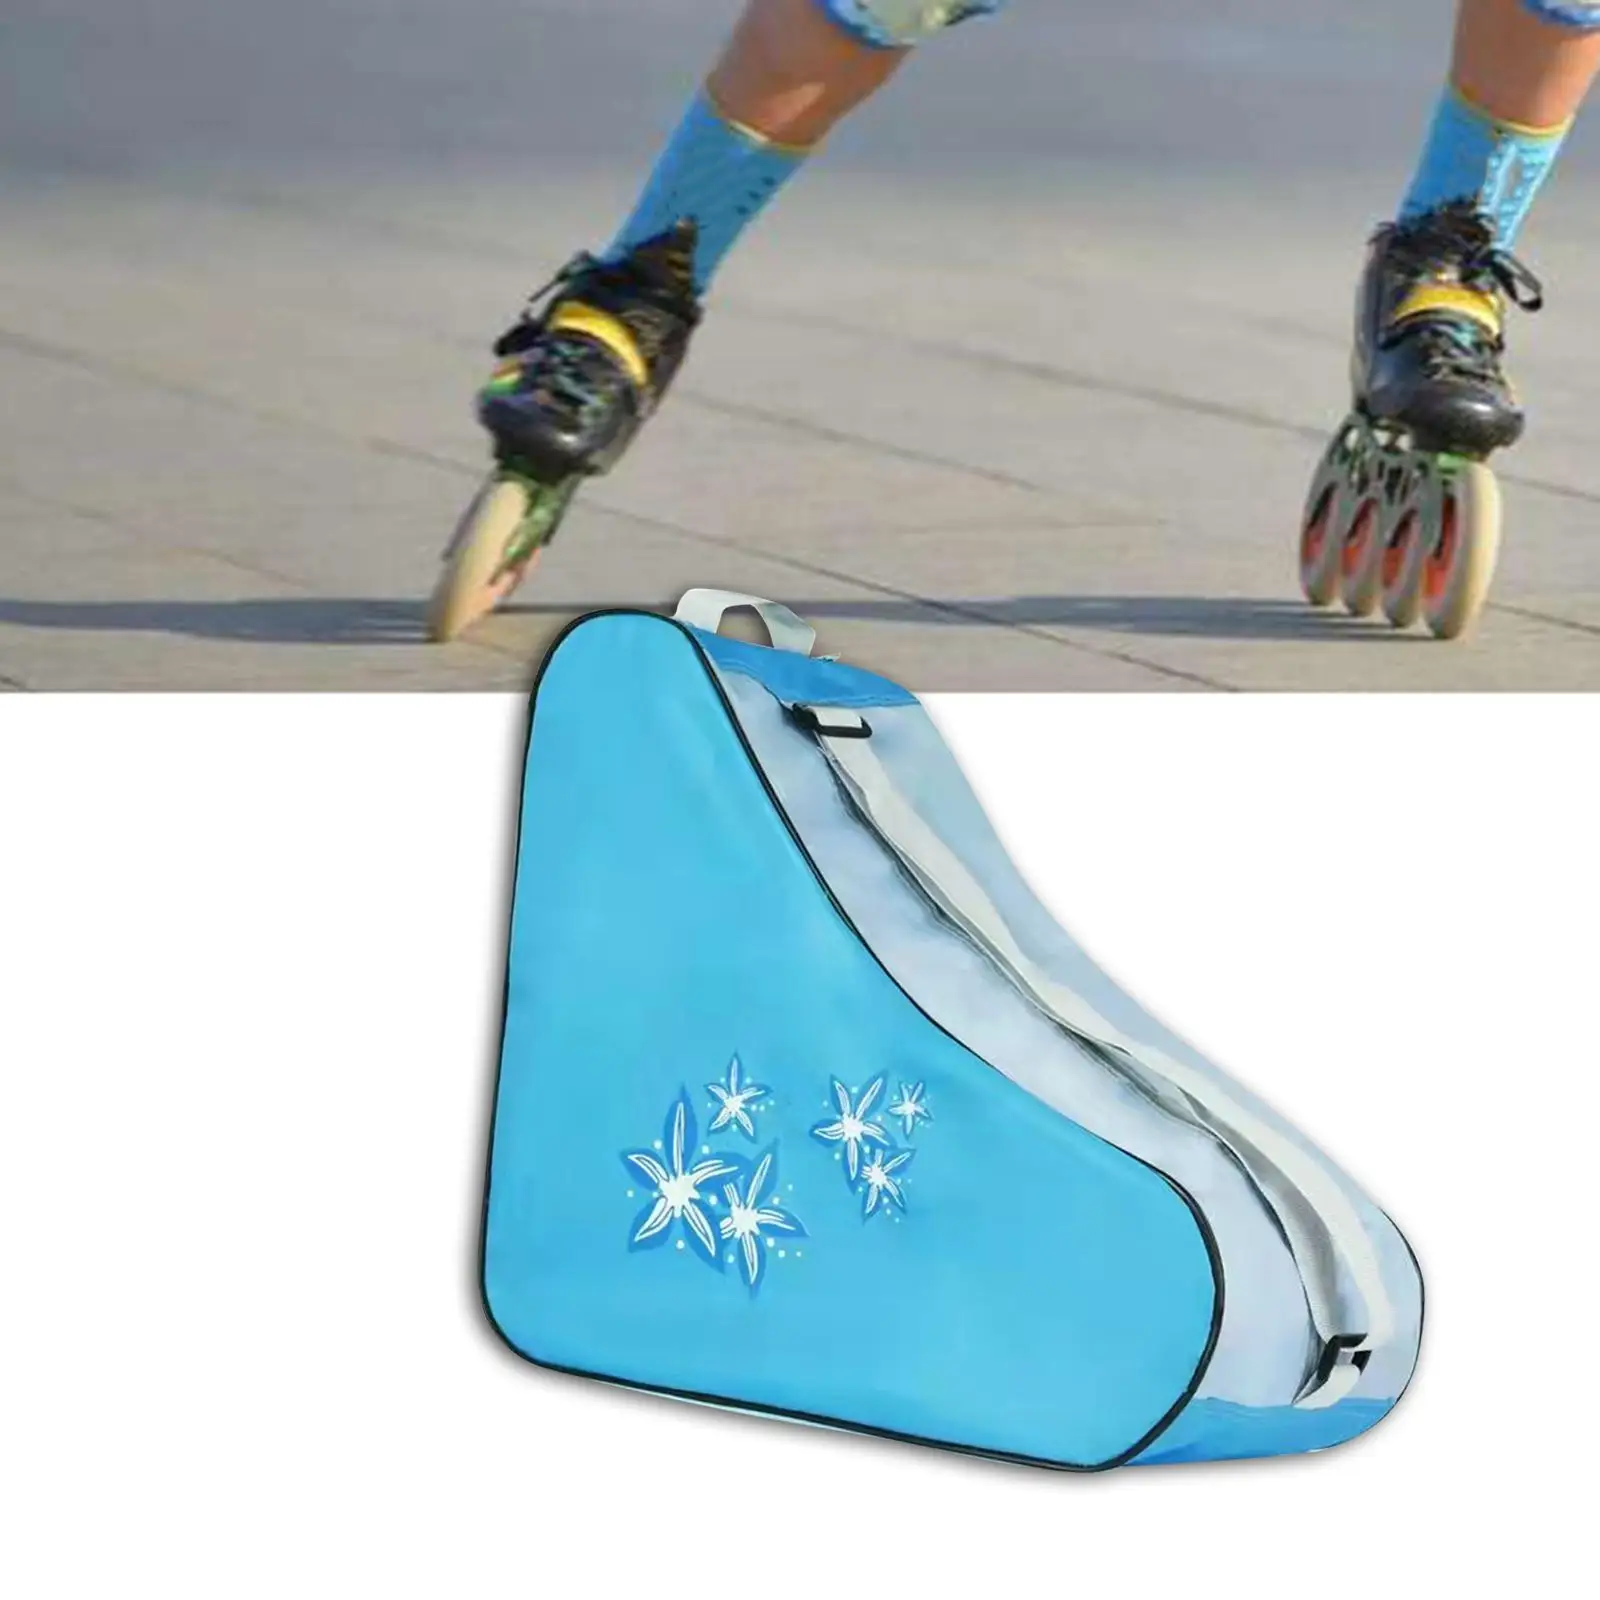 Roller Skate Bag Adjustable Shoulder Strap Roller Skate Carrier Skate Carry Bag for Quad Skates Ice Hockey Skate Inline Skates